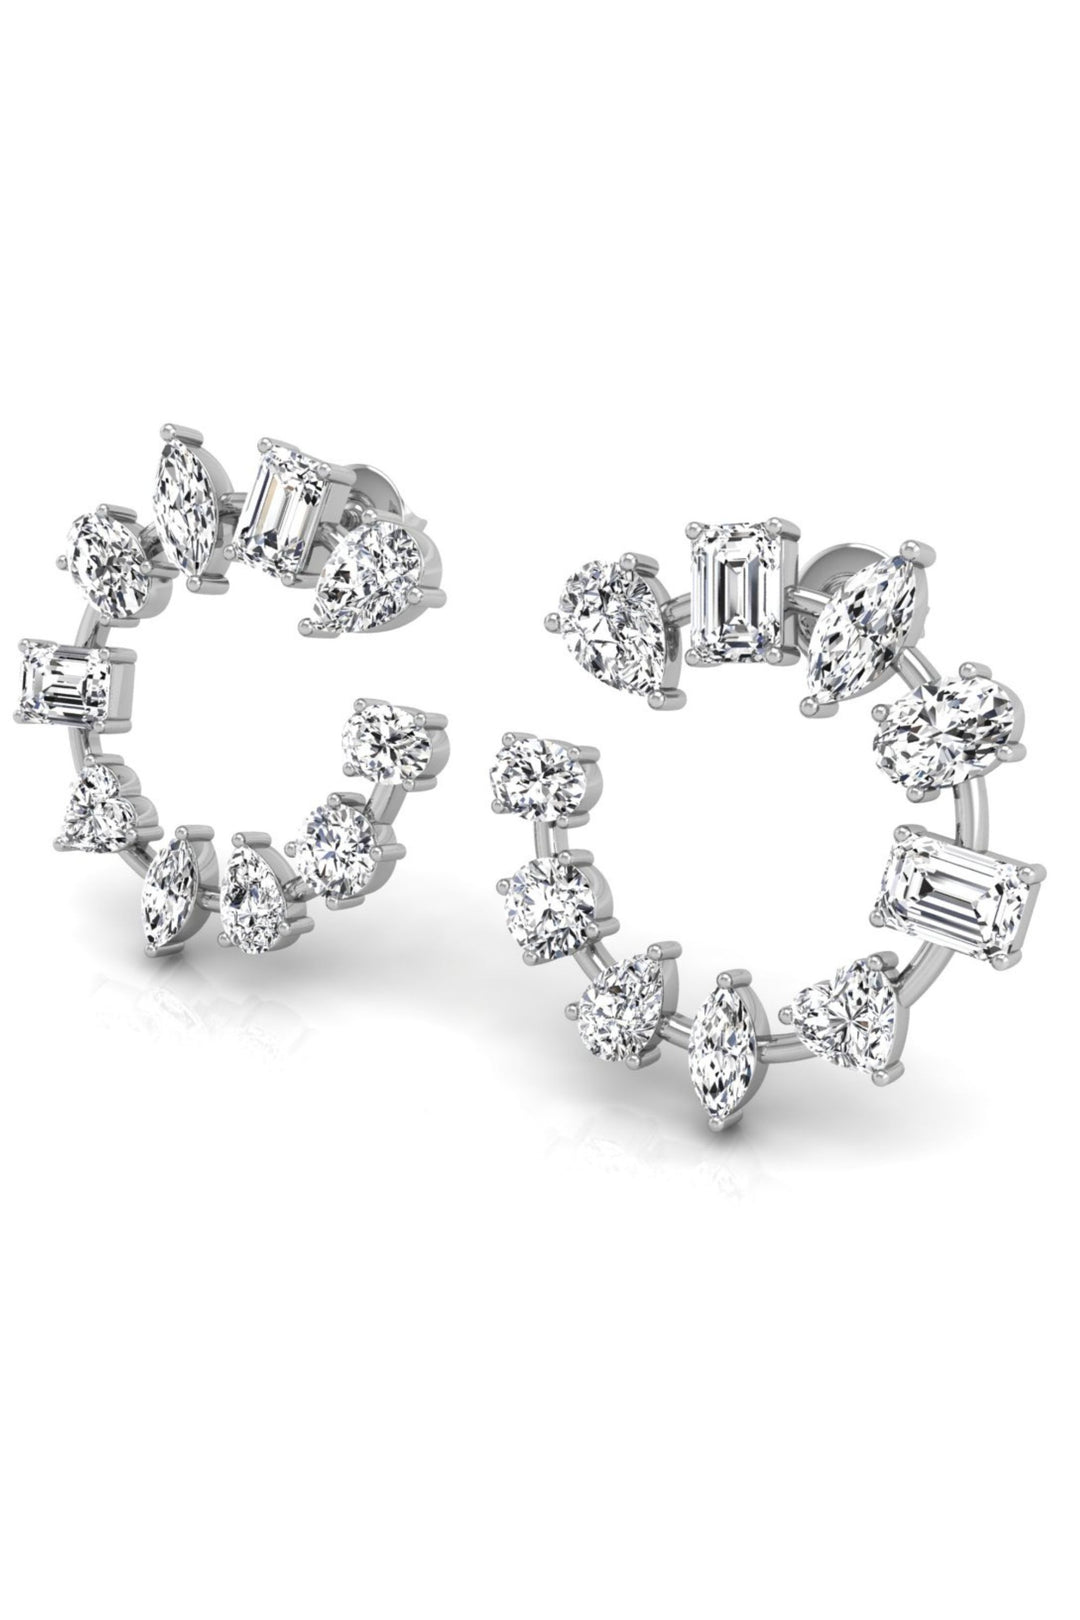 Multi Shaped Diamond Moissanite Round Earrings for Women